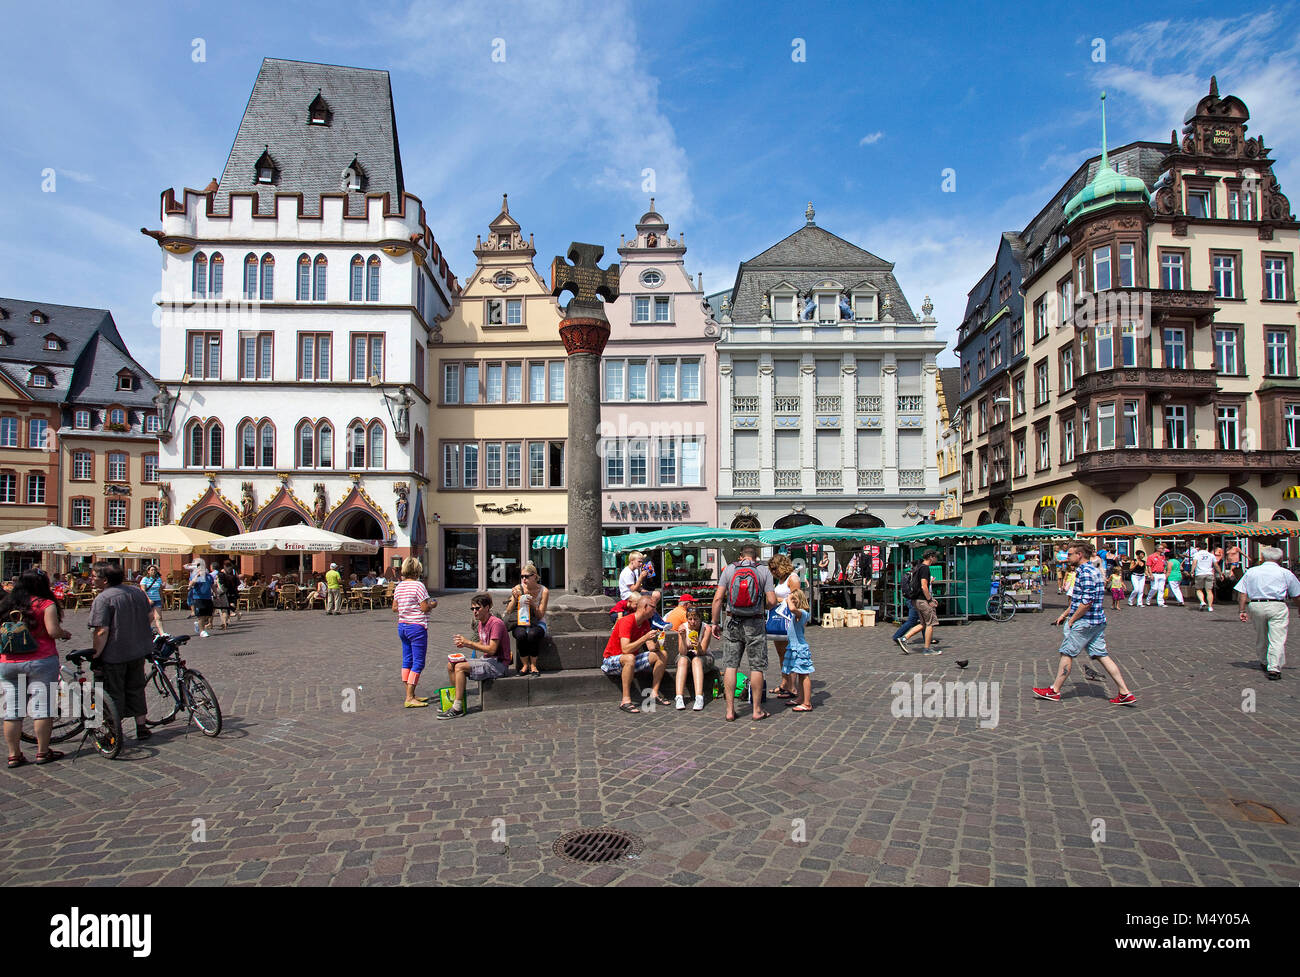 La vida de la ciudad en el principal mercado, mercado cruz, Trier, Renania-Palatinado, Alemania, Europa Foto de stock